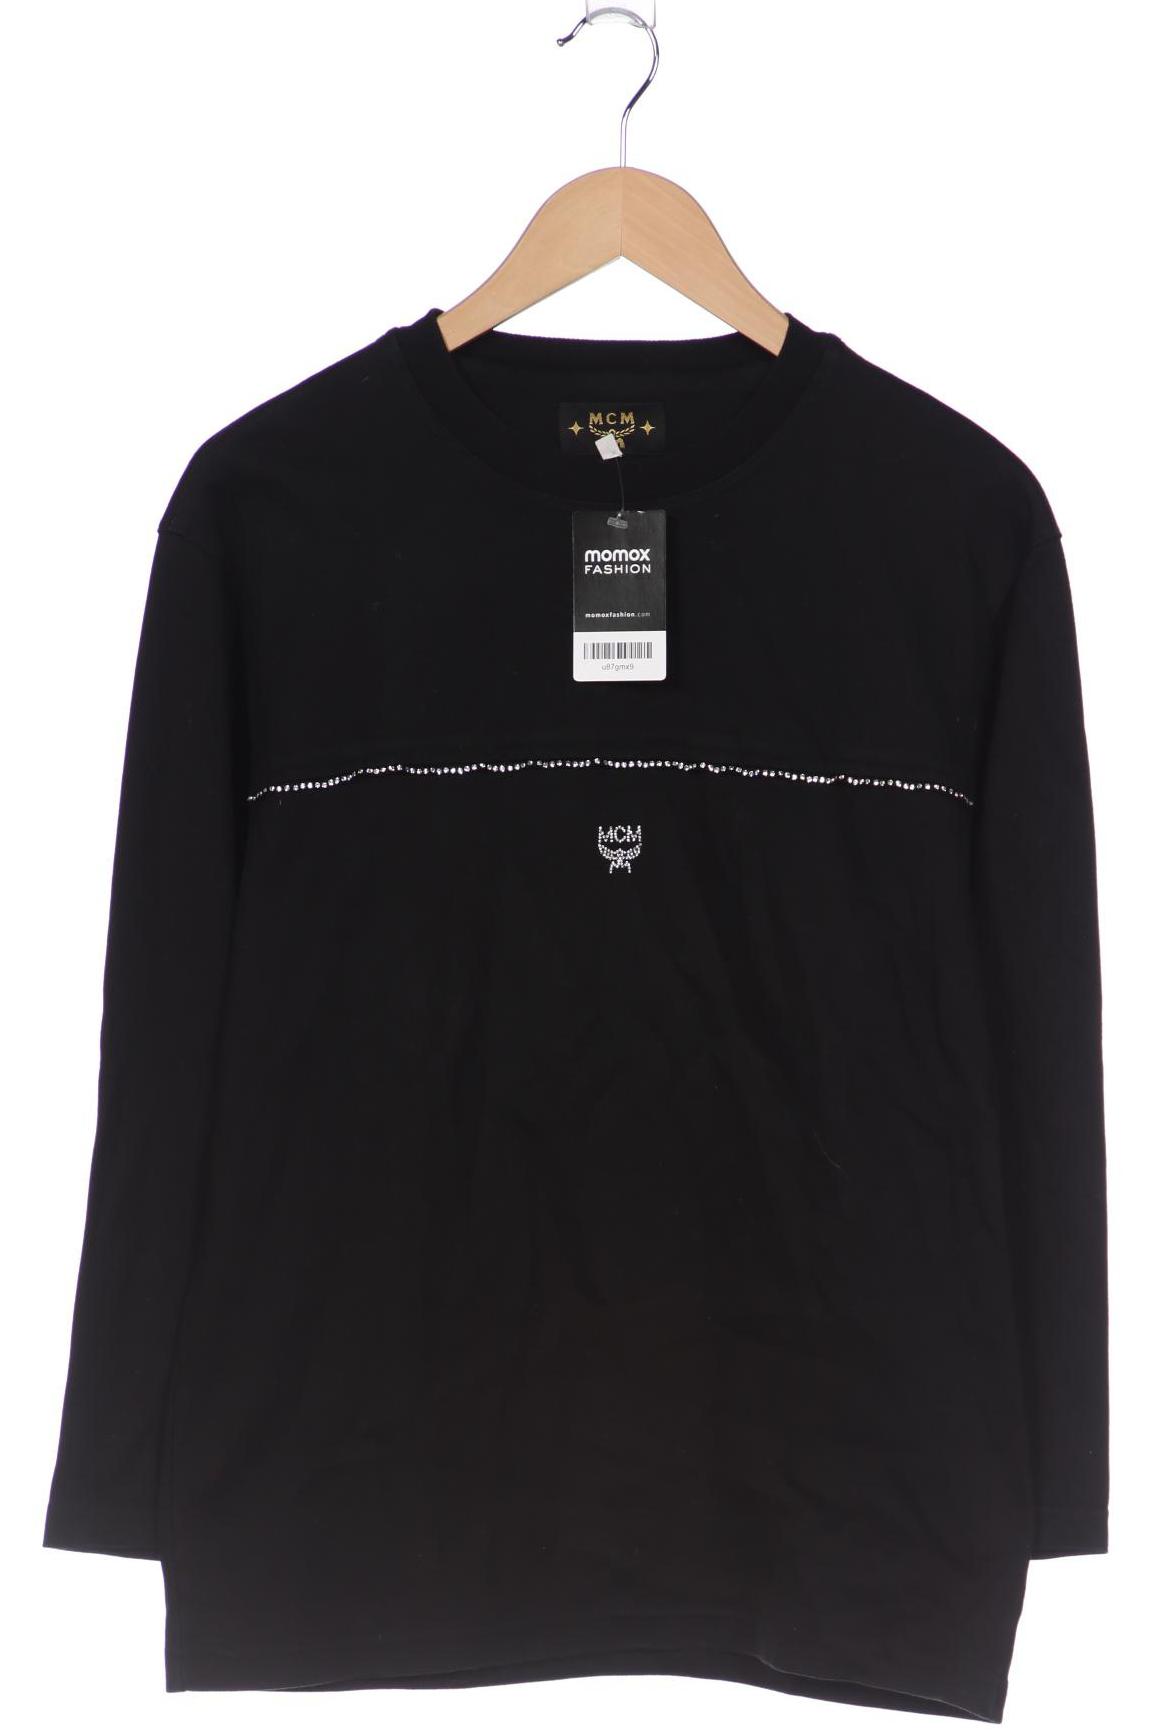 MCM Damen Sweatshirt, schwarz, Gr. 42 von MCM